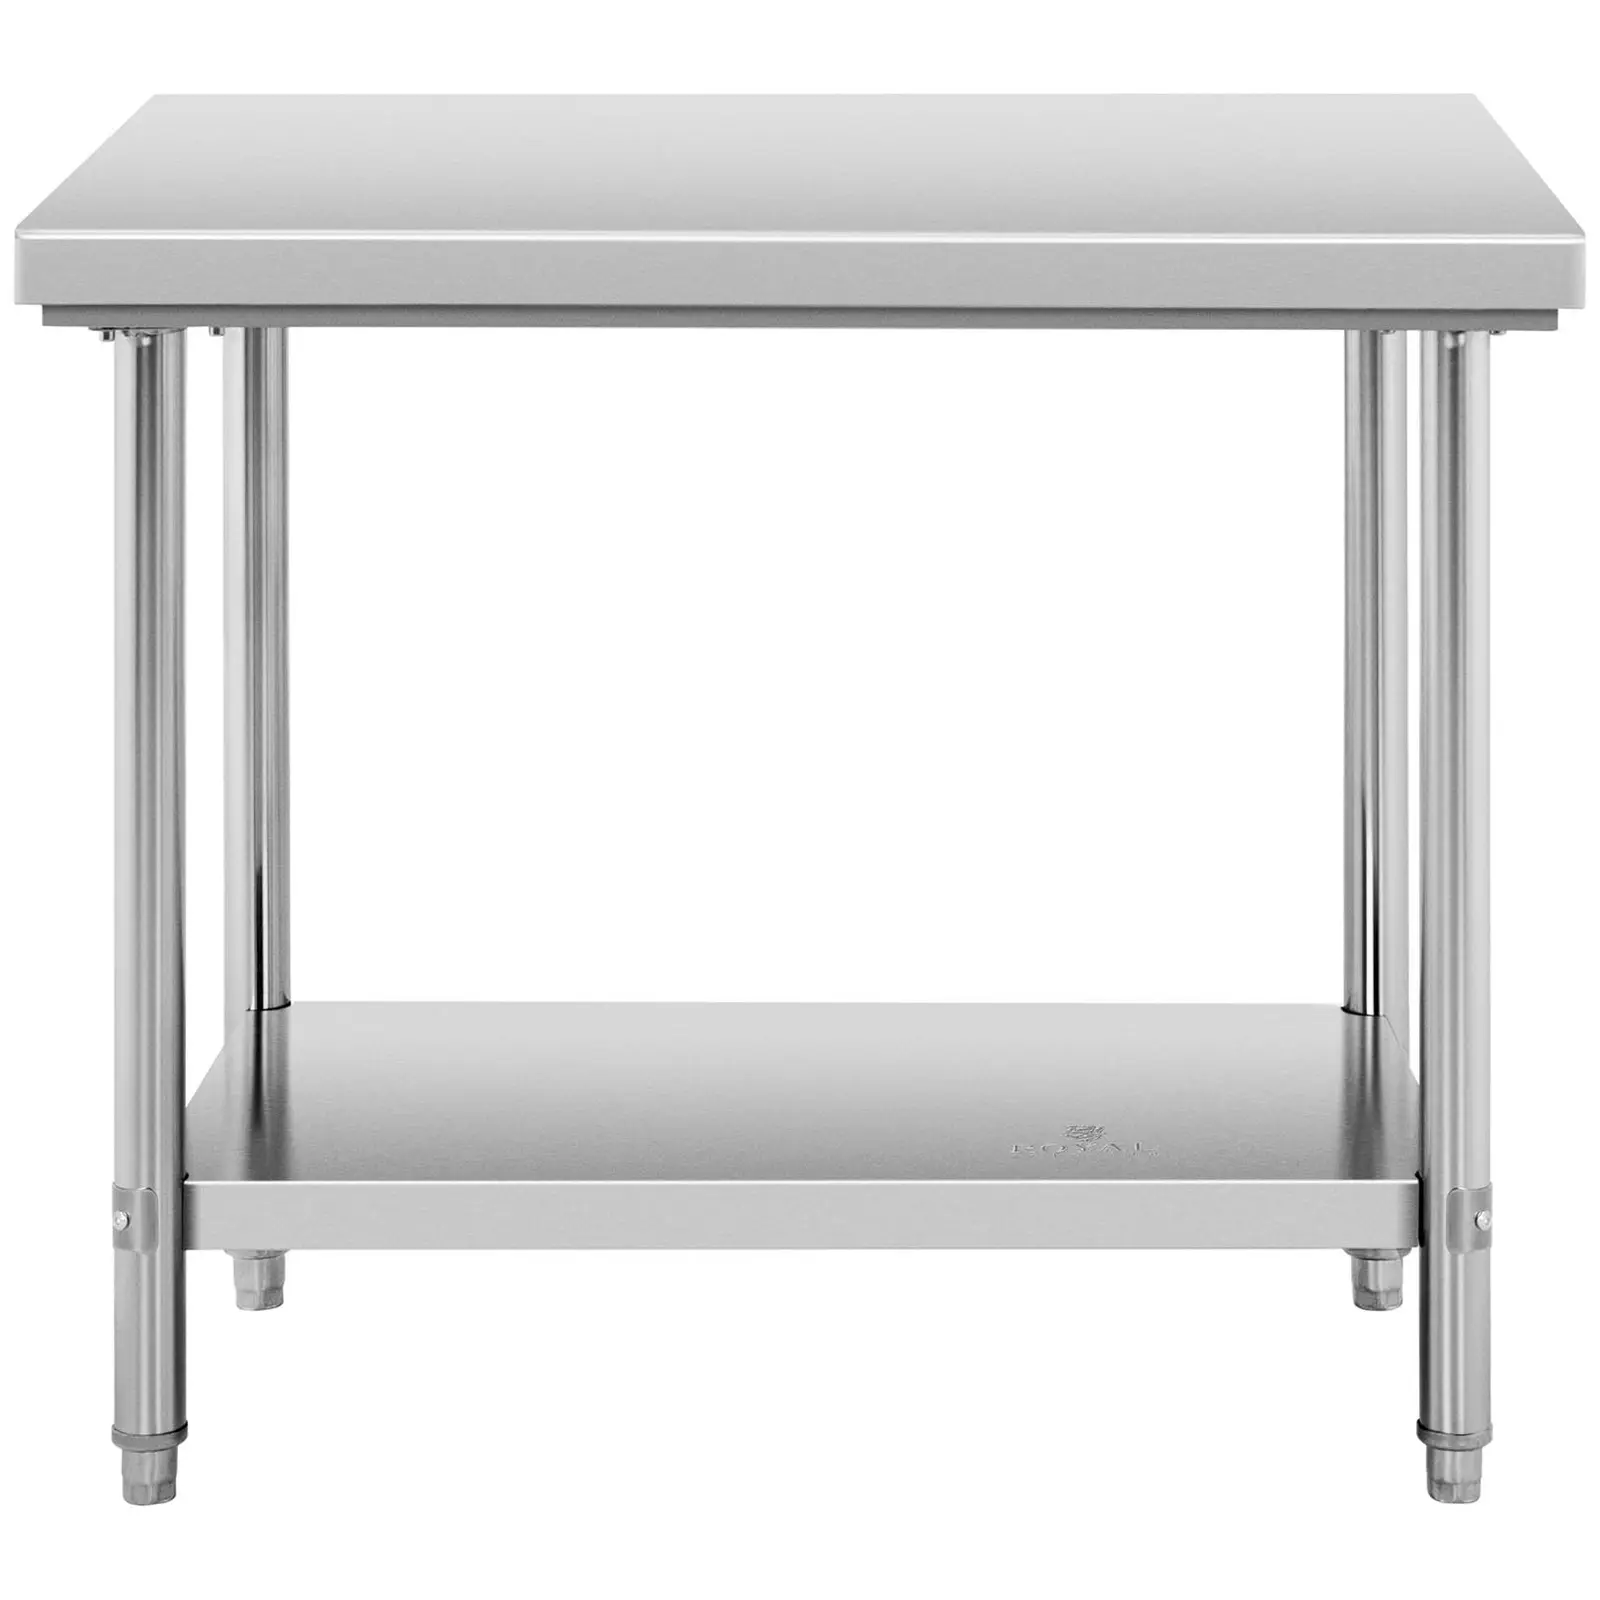 Pracovný stôl z nehrdzavejúcej ocele - 100 x 70 cm - nosnosť 190 kg